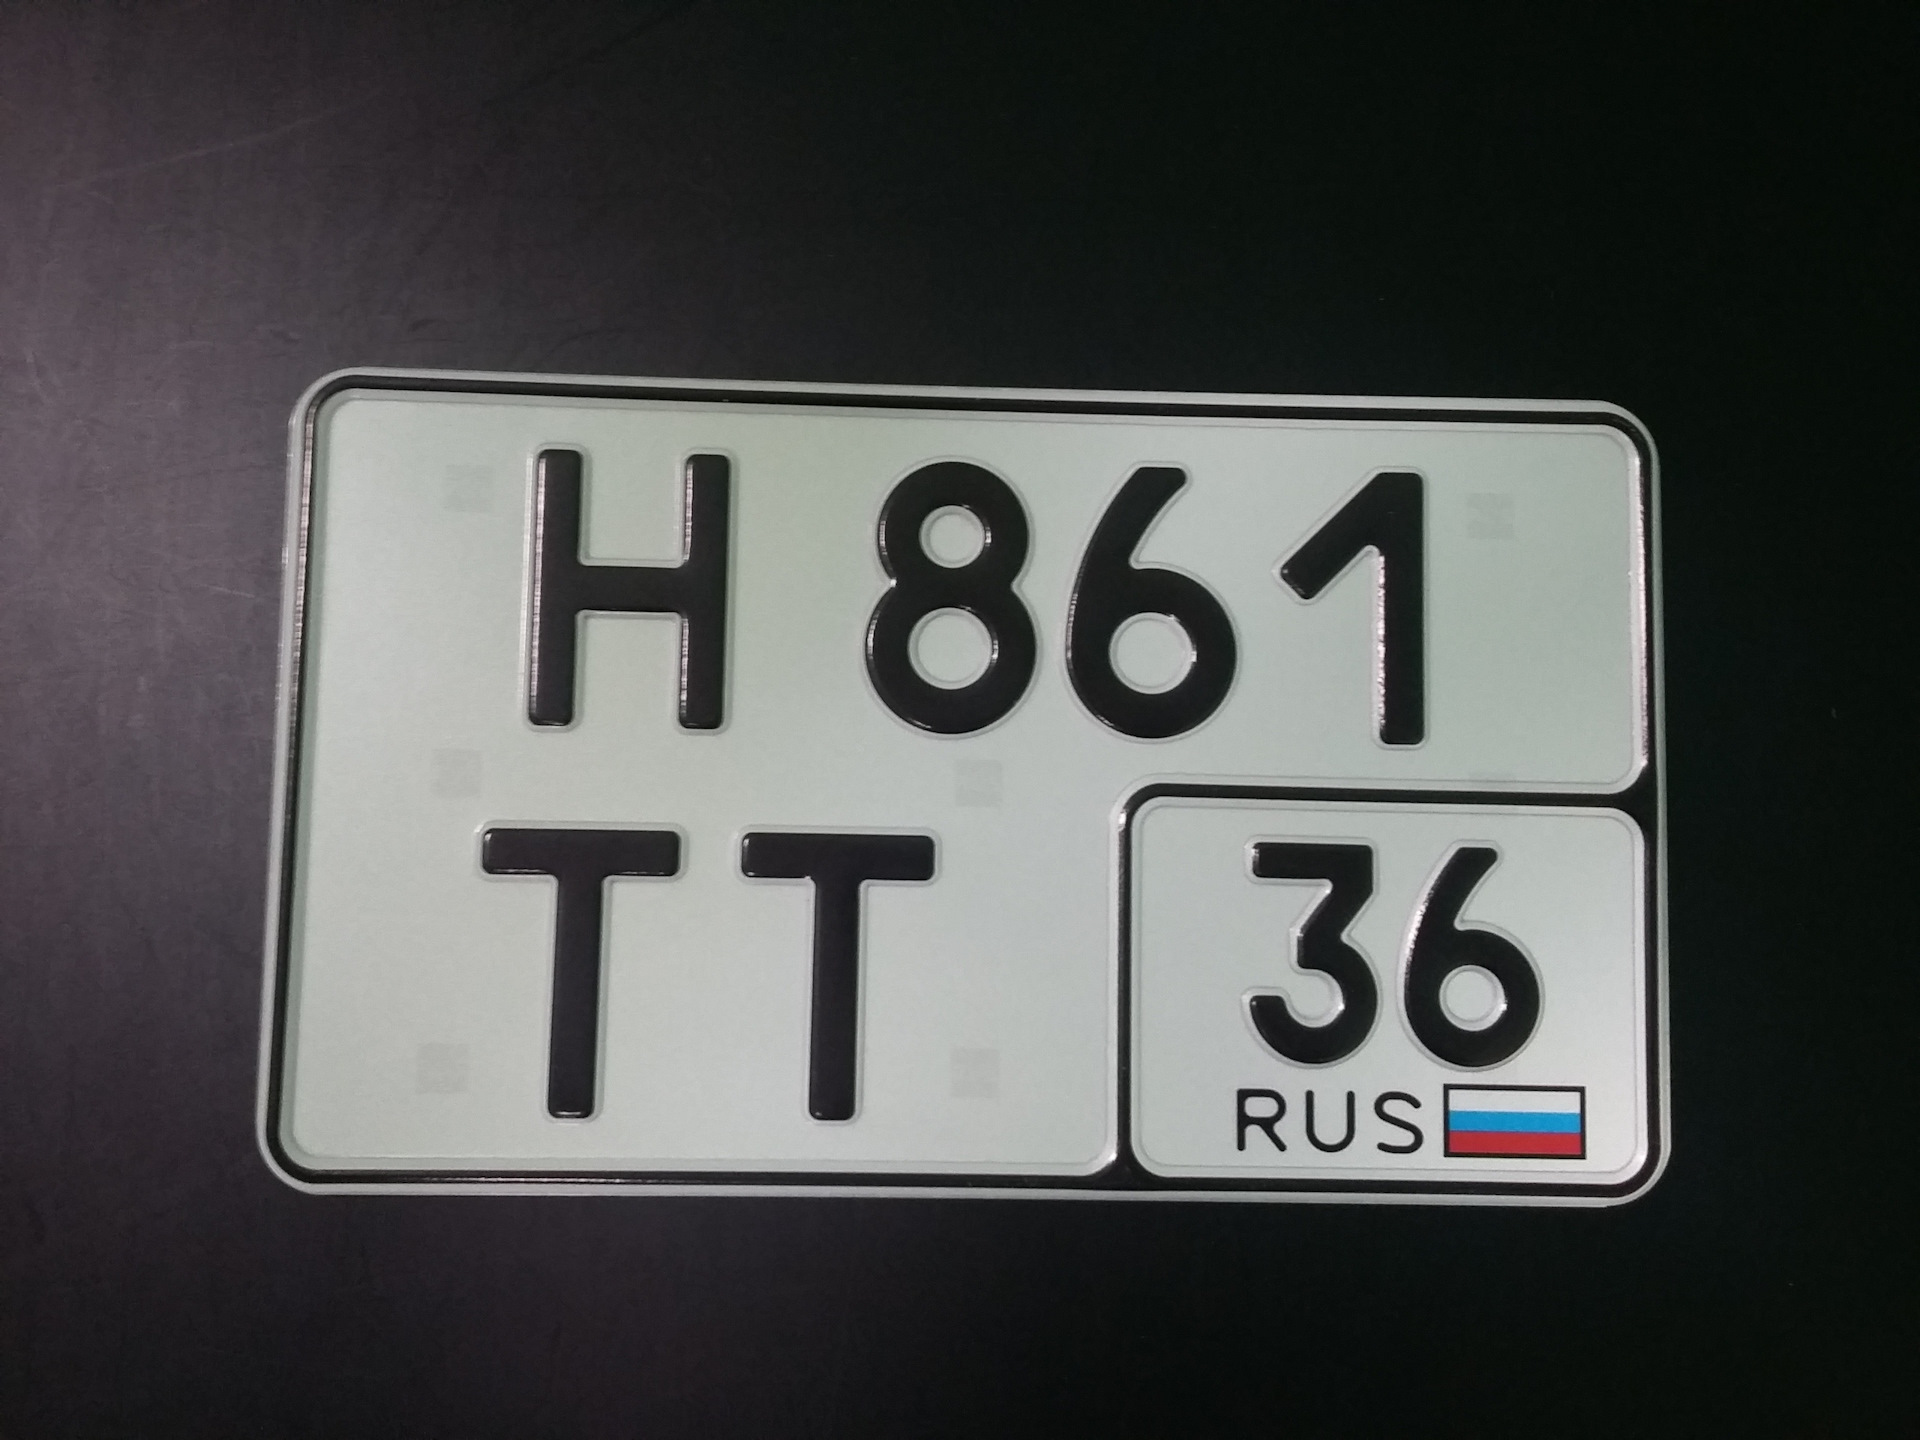 Любой номер машины. Квадратный номерной знак. Российские квадратные номера на авто. Квадратный гос номер. Квадратный номерной знак на авто.